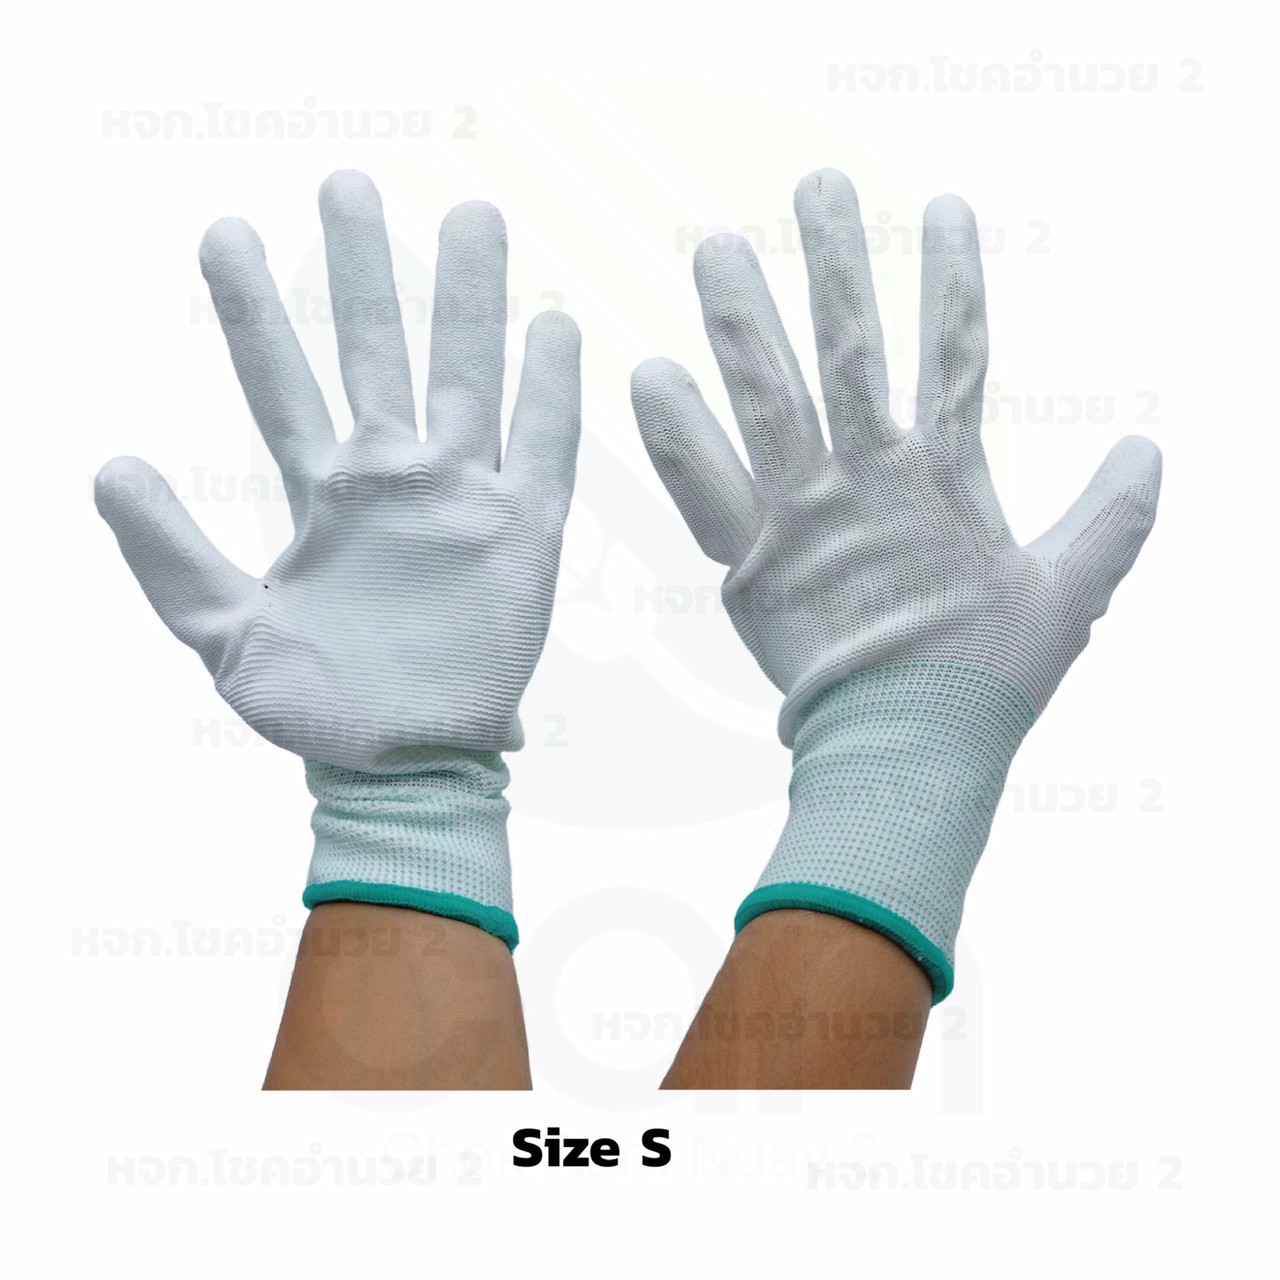 (ยกโหล /12คู่) ถุงมือเคลือบยางสีขาว ถุงมือ ถุงมือกันบาด ถุงมือเคลือบPU เต็มมือ ถุงมือเคลือบยางกันบาด  ถุงมือไนล่อนพร้อมส่ง